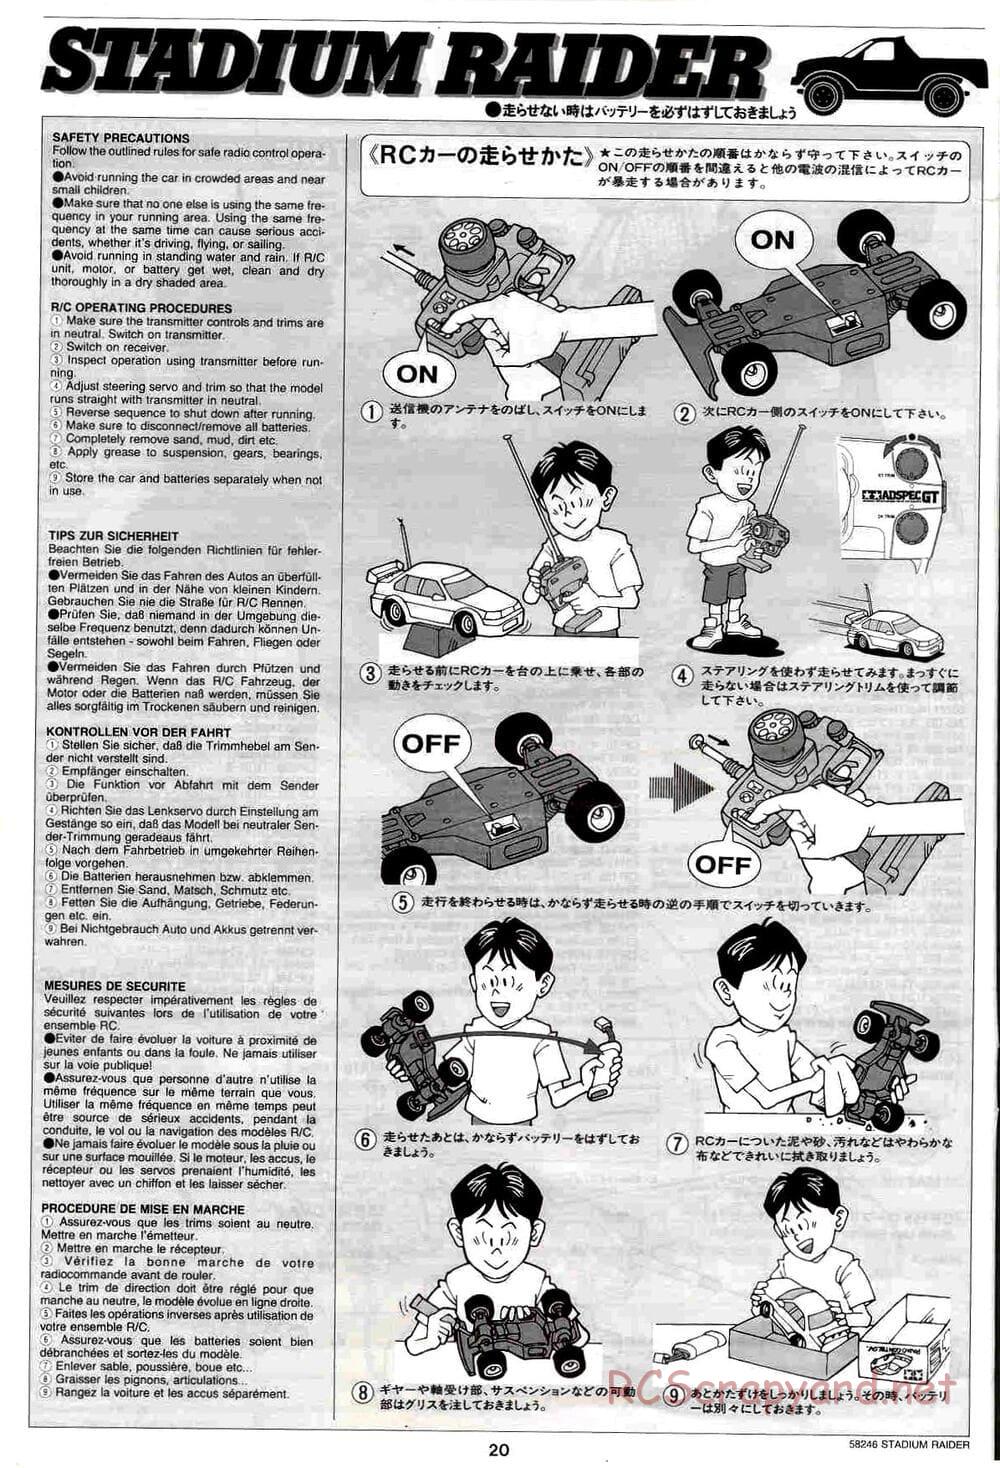 Tamiya - Stadium Raider - TL-01 Chassis - Manual - Page 20